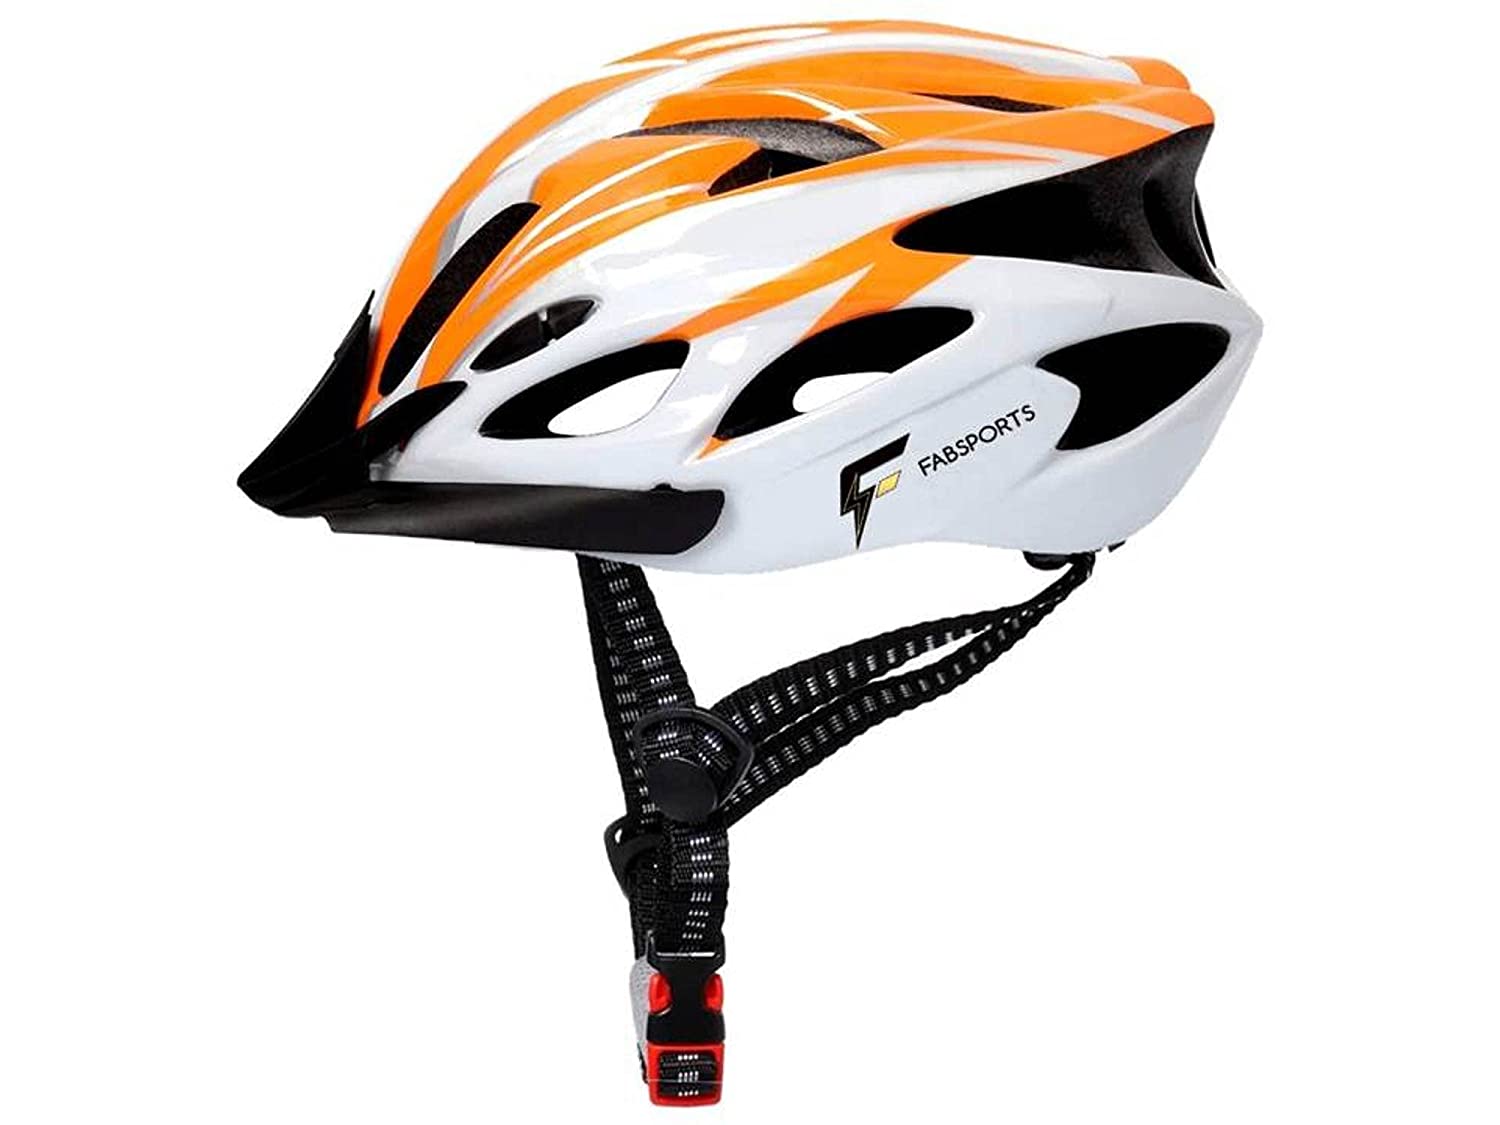 FABSPORTS Light Weight Bike Helmet